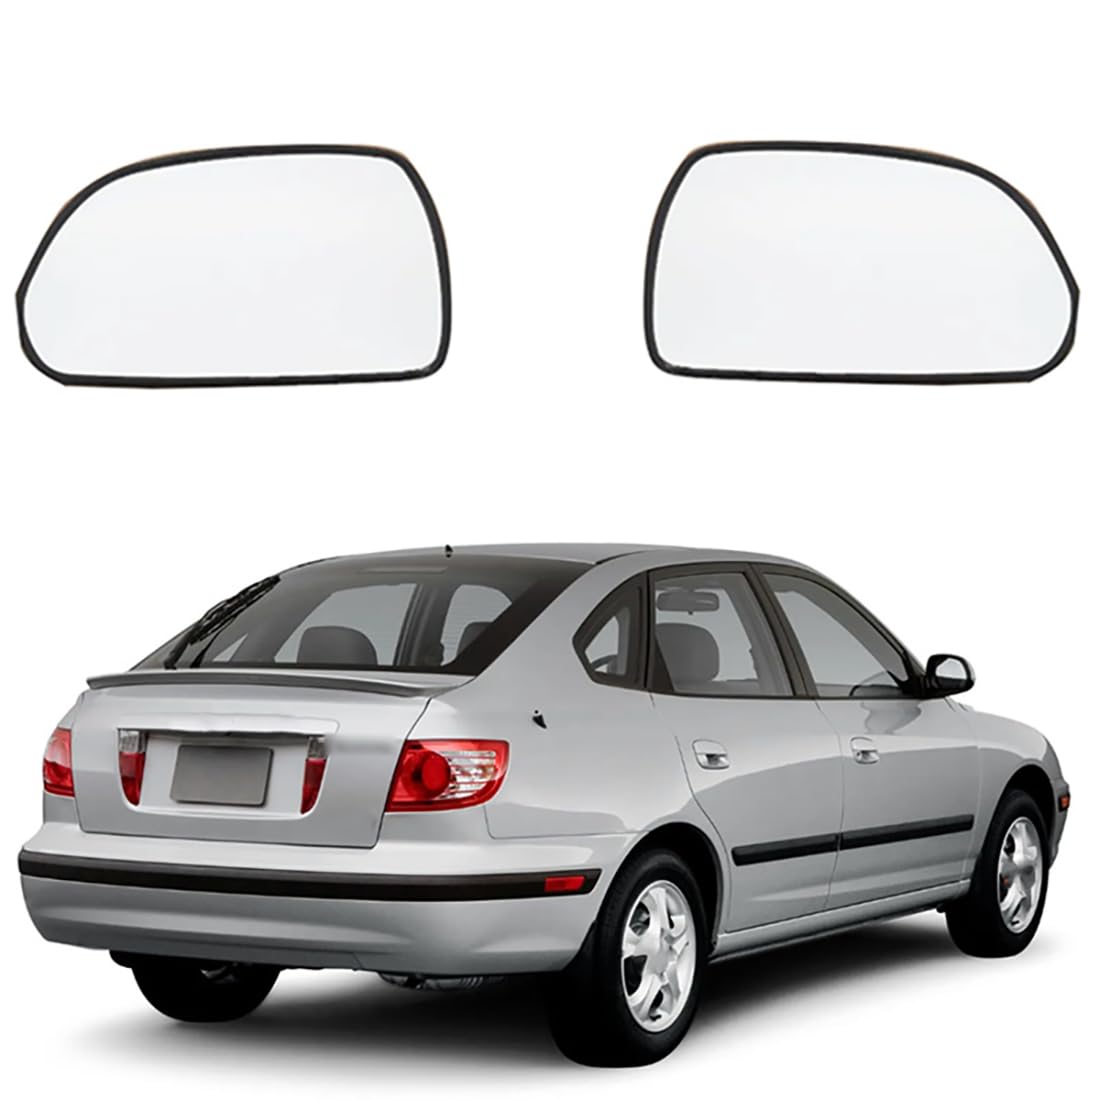 Austauschbarer Auto-Außenspiegel aus Beheizbarem Glas für Hyundai Elantra XD 2000-2006,beheizbarer Rückspiegel für Fahrer und Beifahrer Links/rechts,B-Right von YujieNB